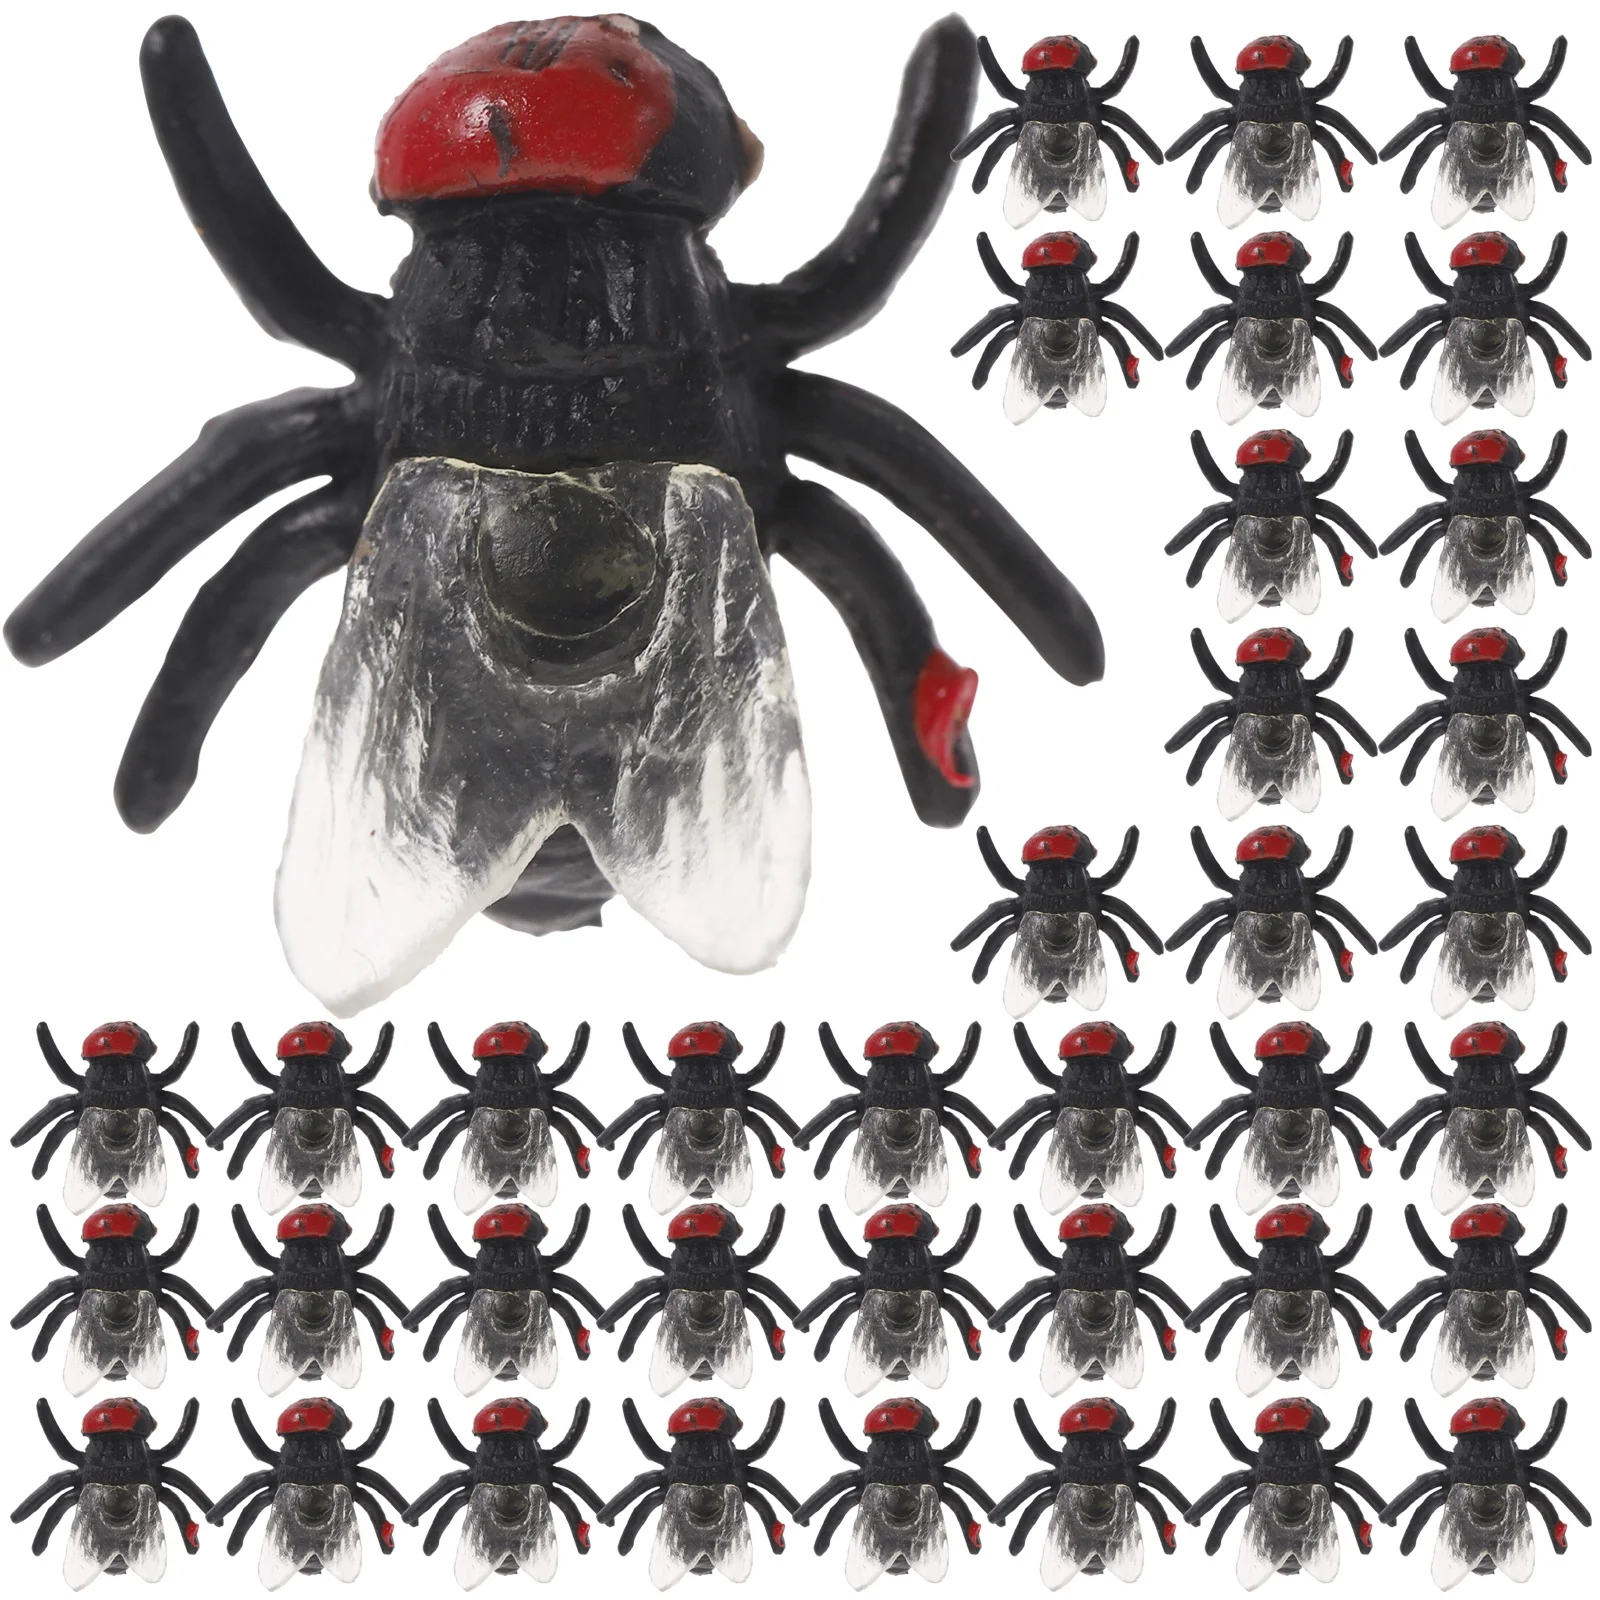 

Имитация мух 50 шт., искусственные игрушки для животных, реквизит в виде мух на День Дурака